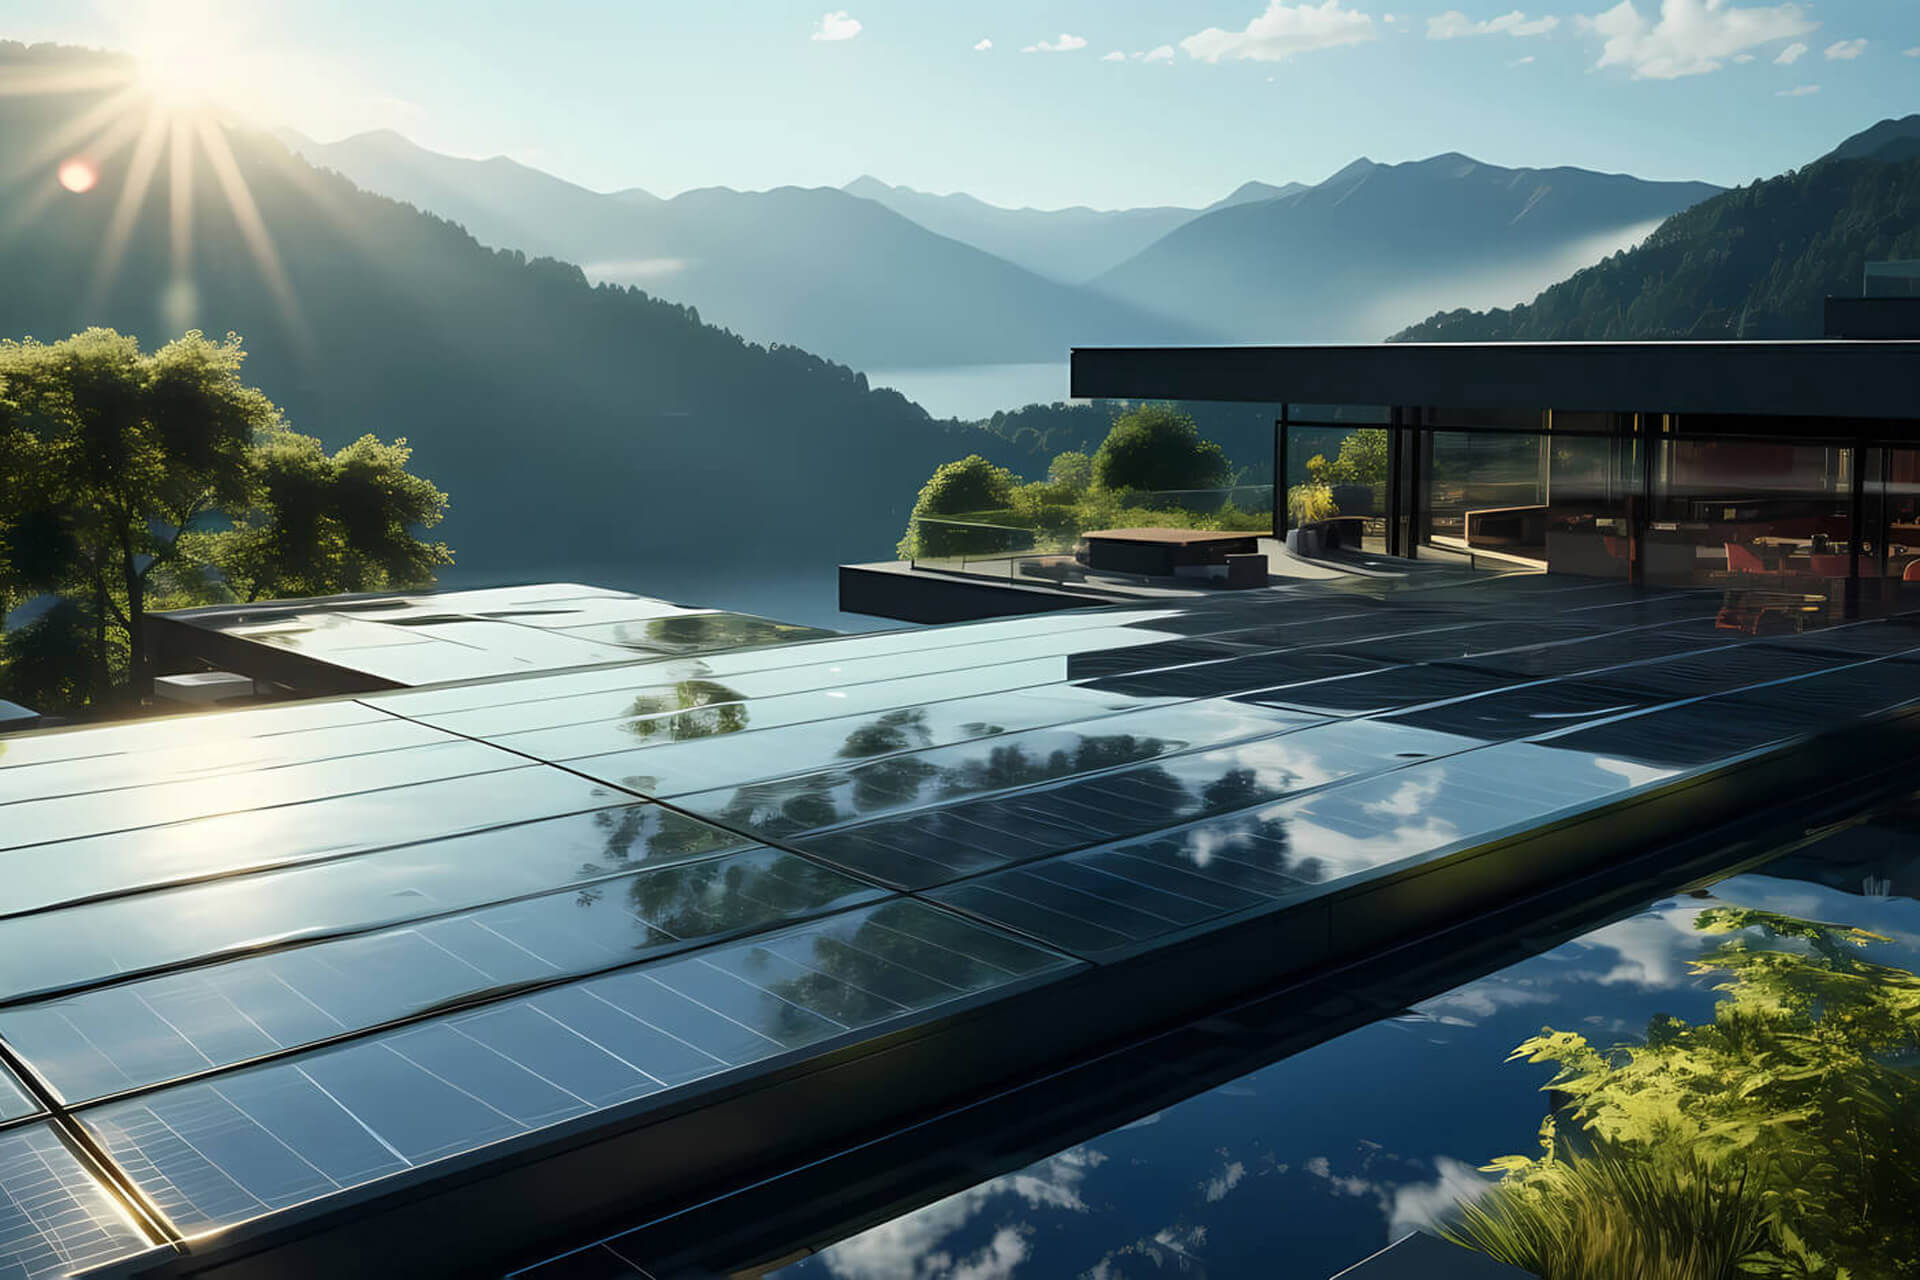 Solar Panele auf einem Hoteldach in einem bergigen Gebiet mit Sonnenschein